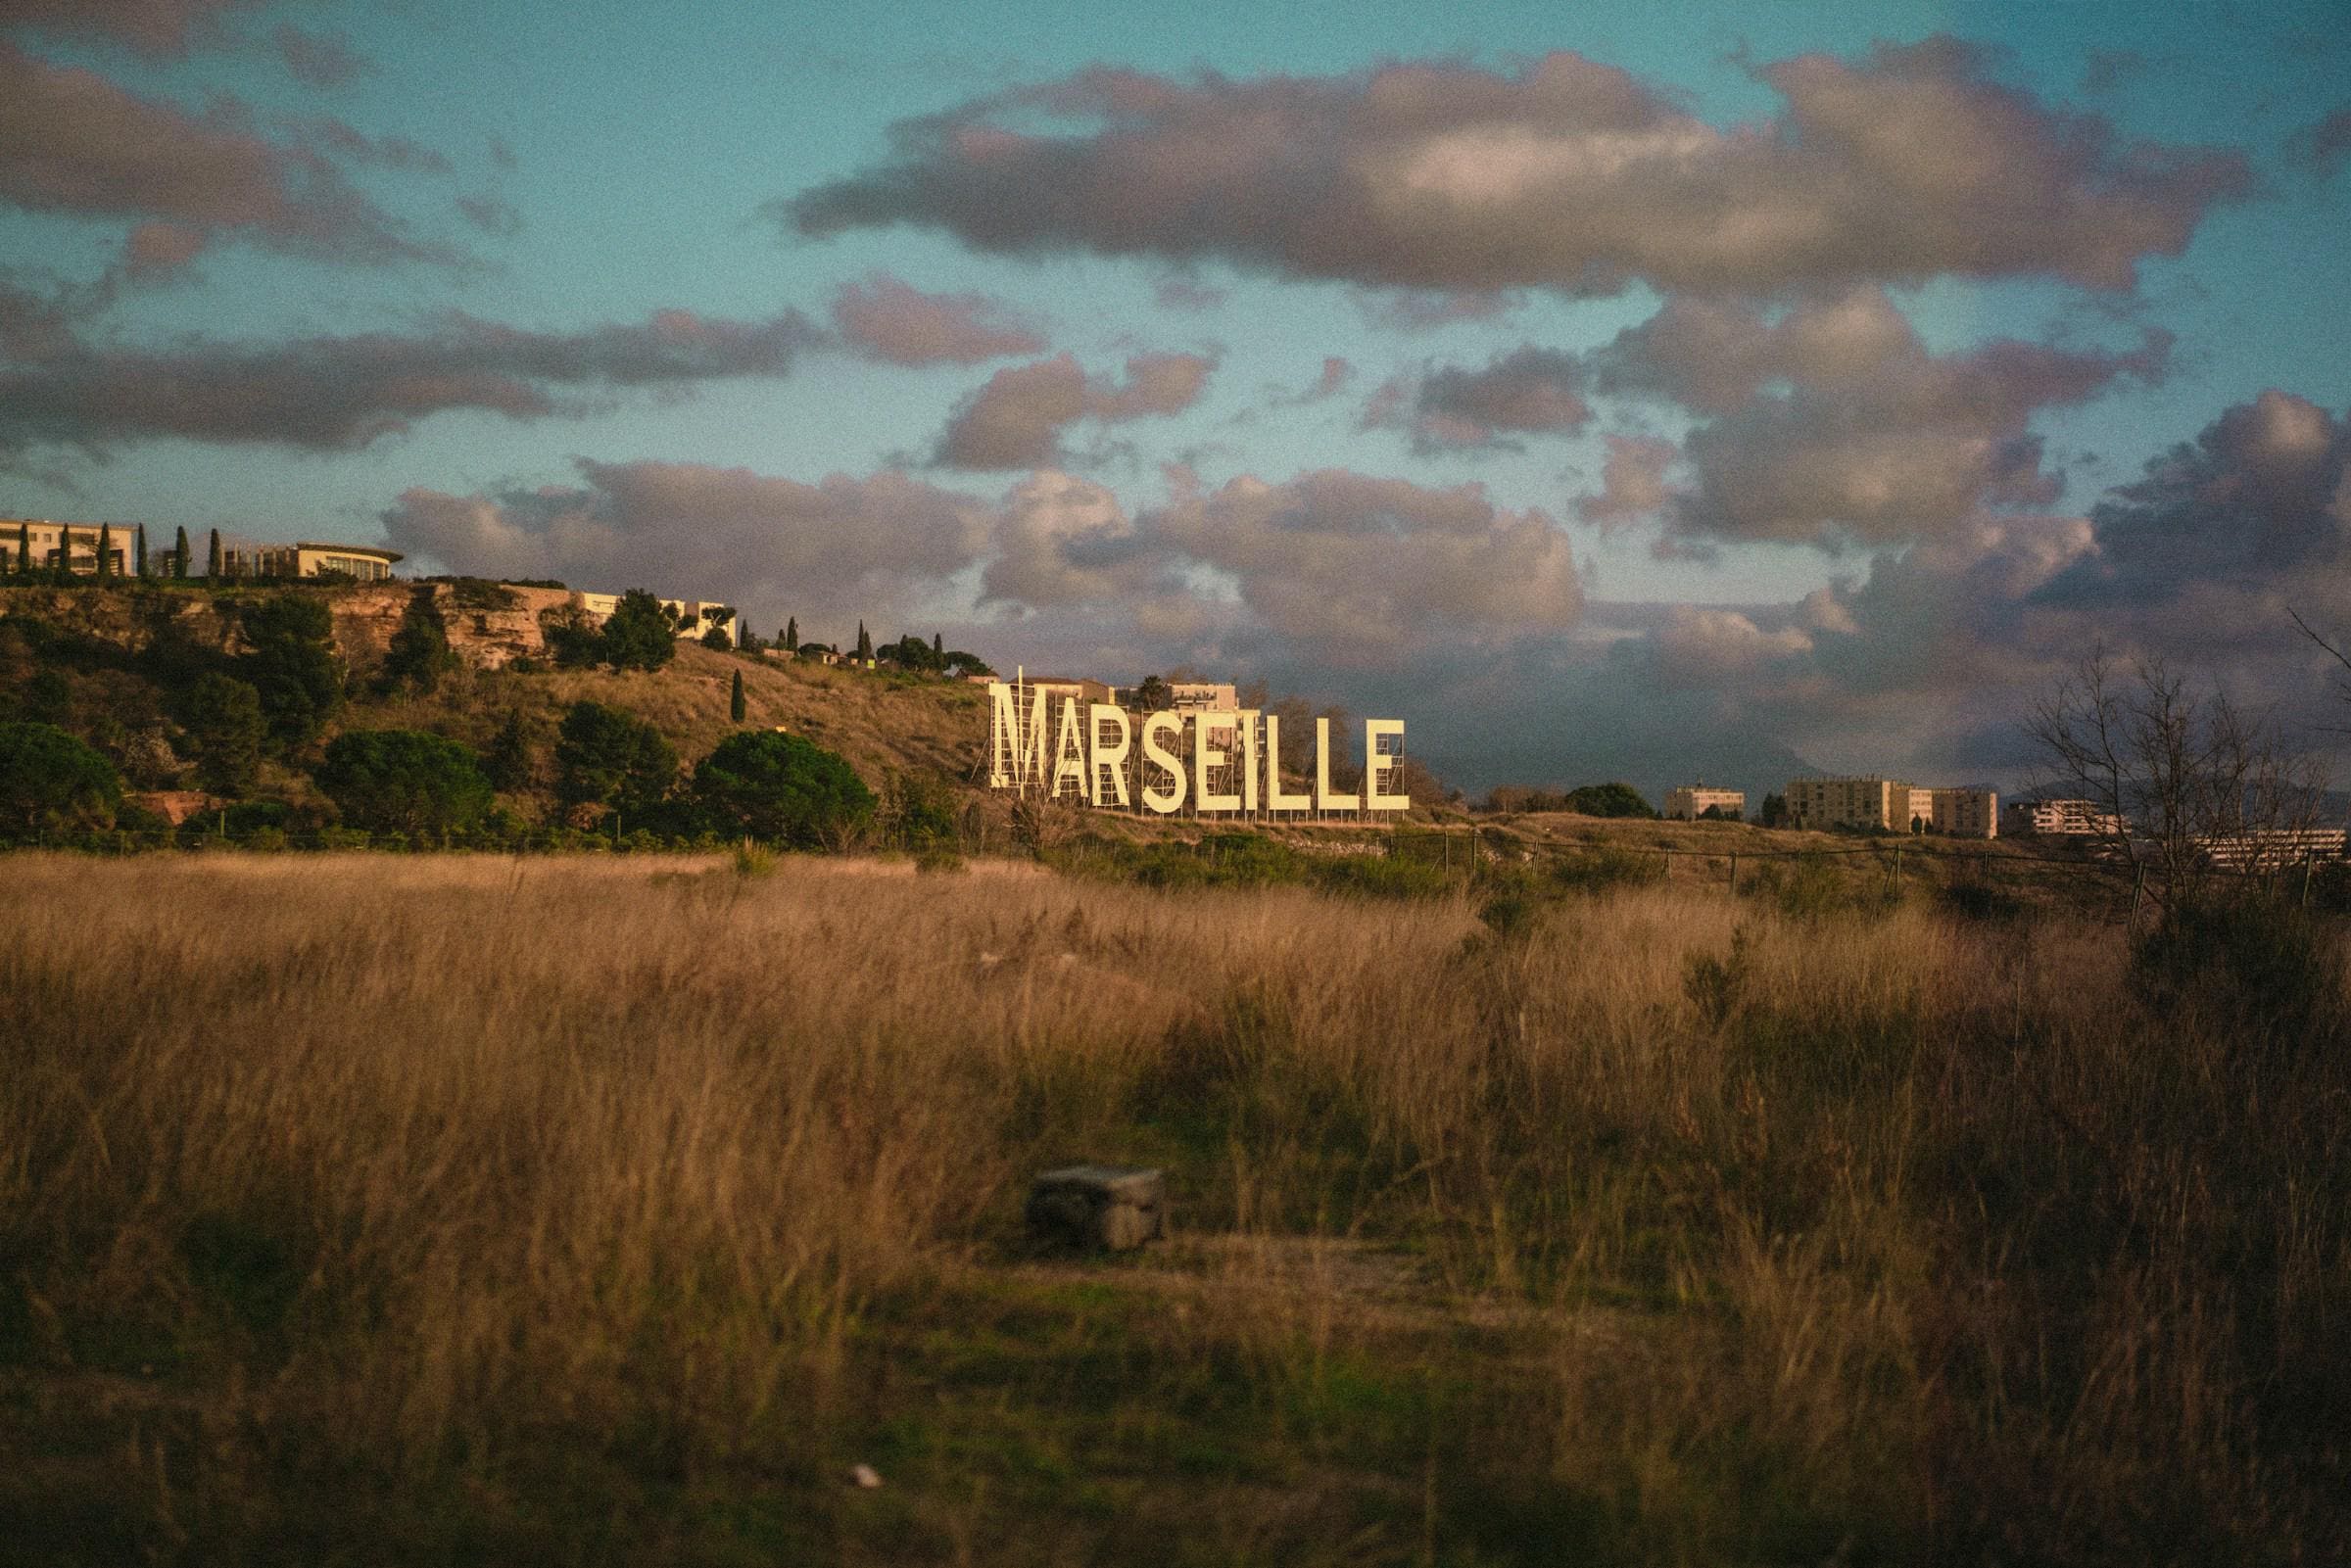 Transformez votre carrière grâce à une formation en ligne à Marseille, une initiative qui s'inscrit parfaitement dans le dynamisme et l'esprit novateur de cette ville portuaire emblématique.